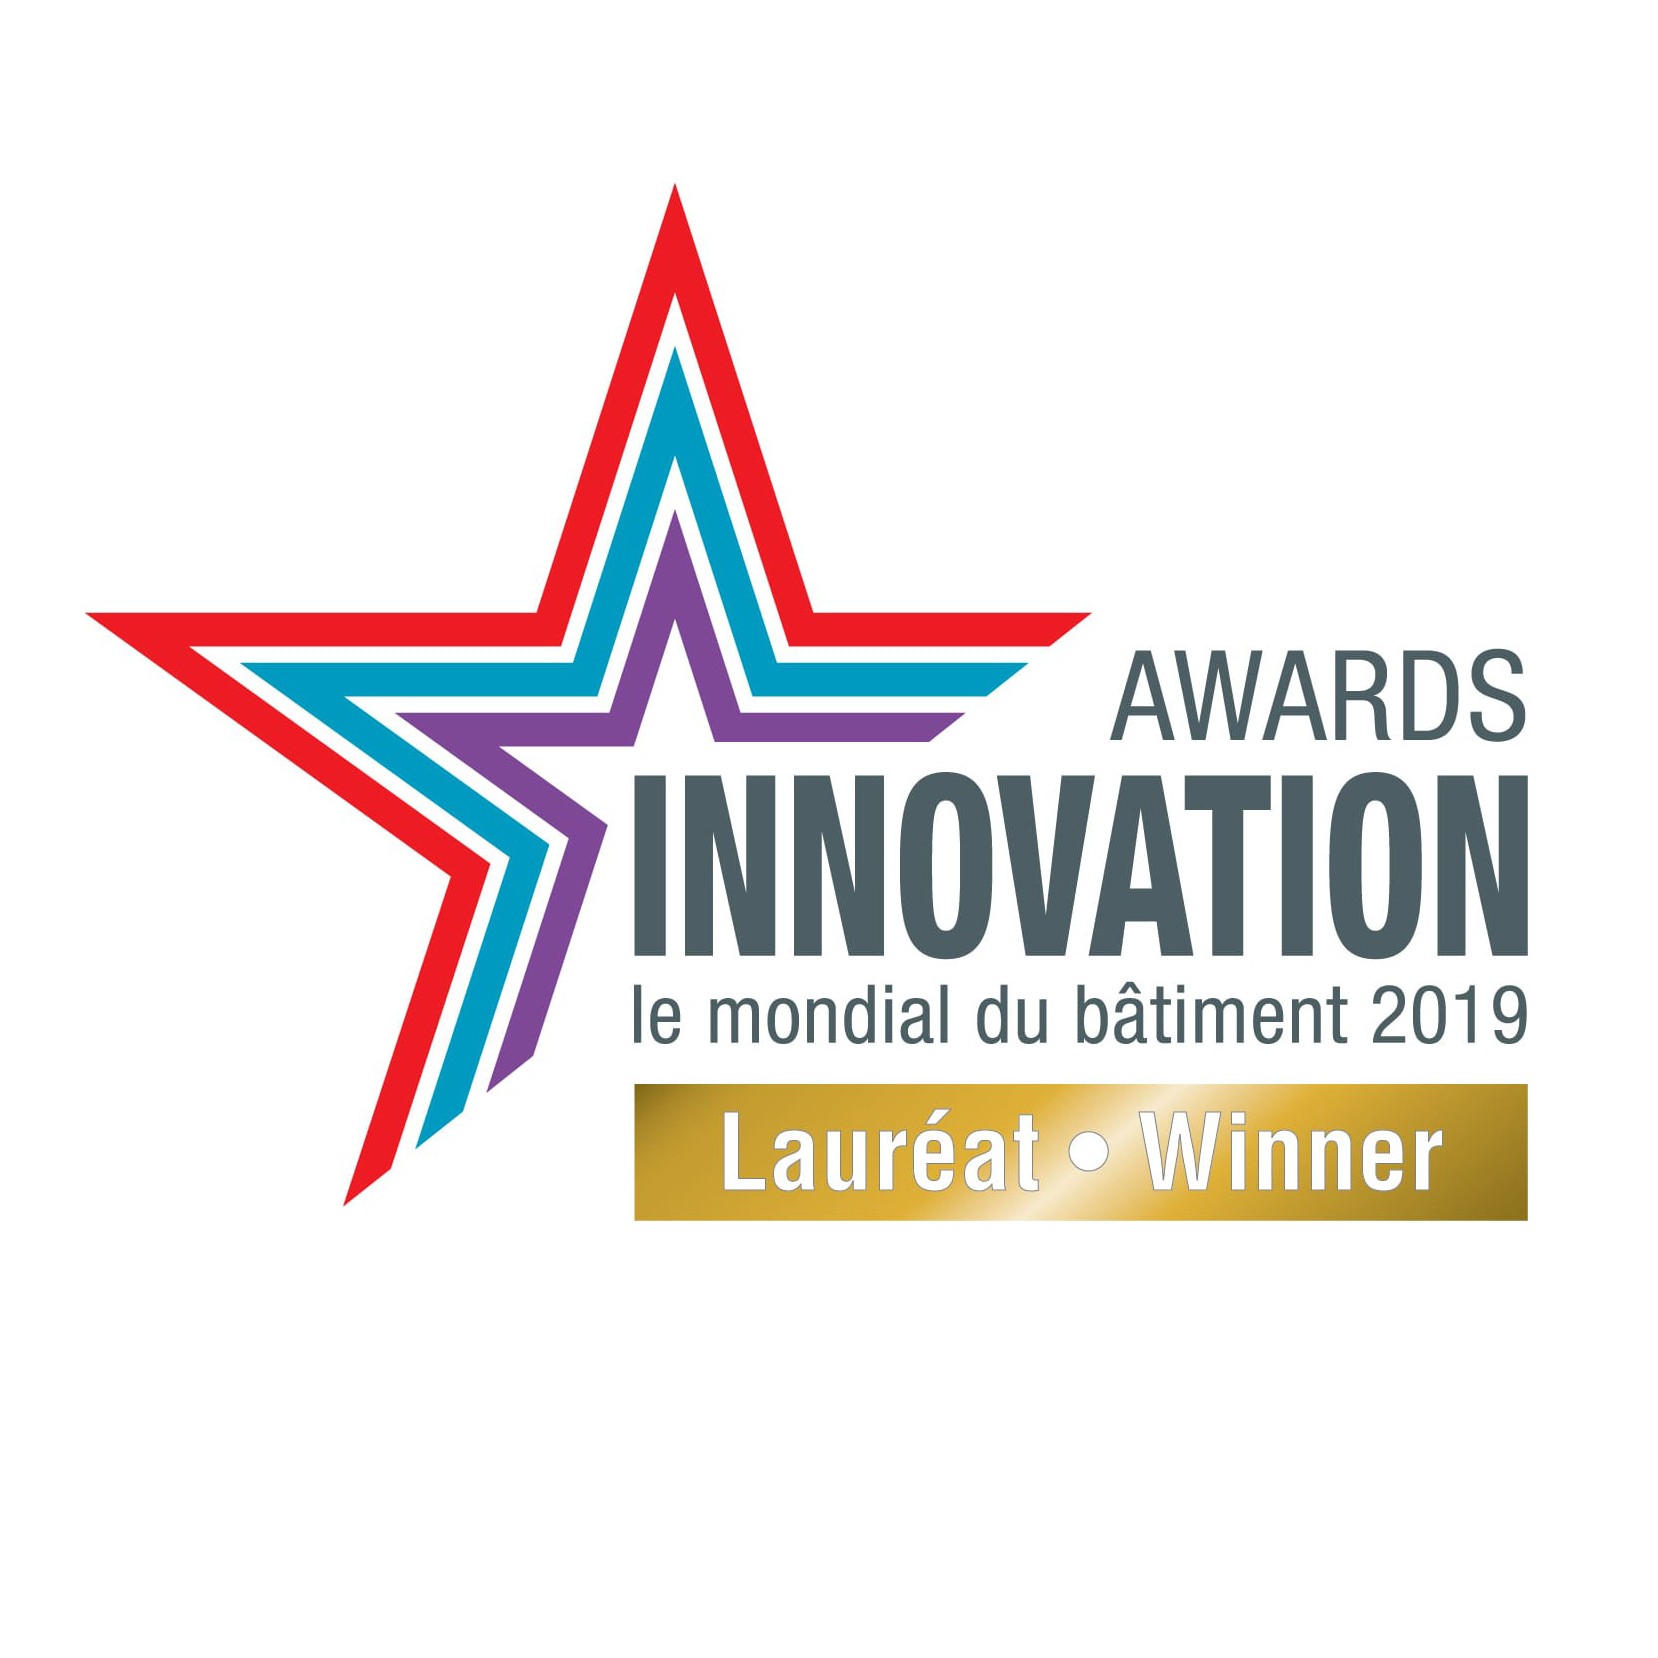 Innovations Award